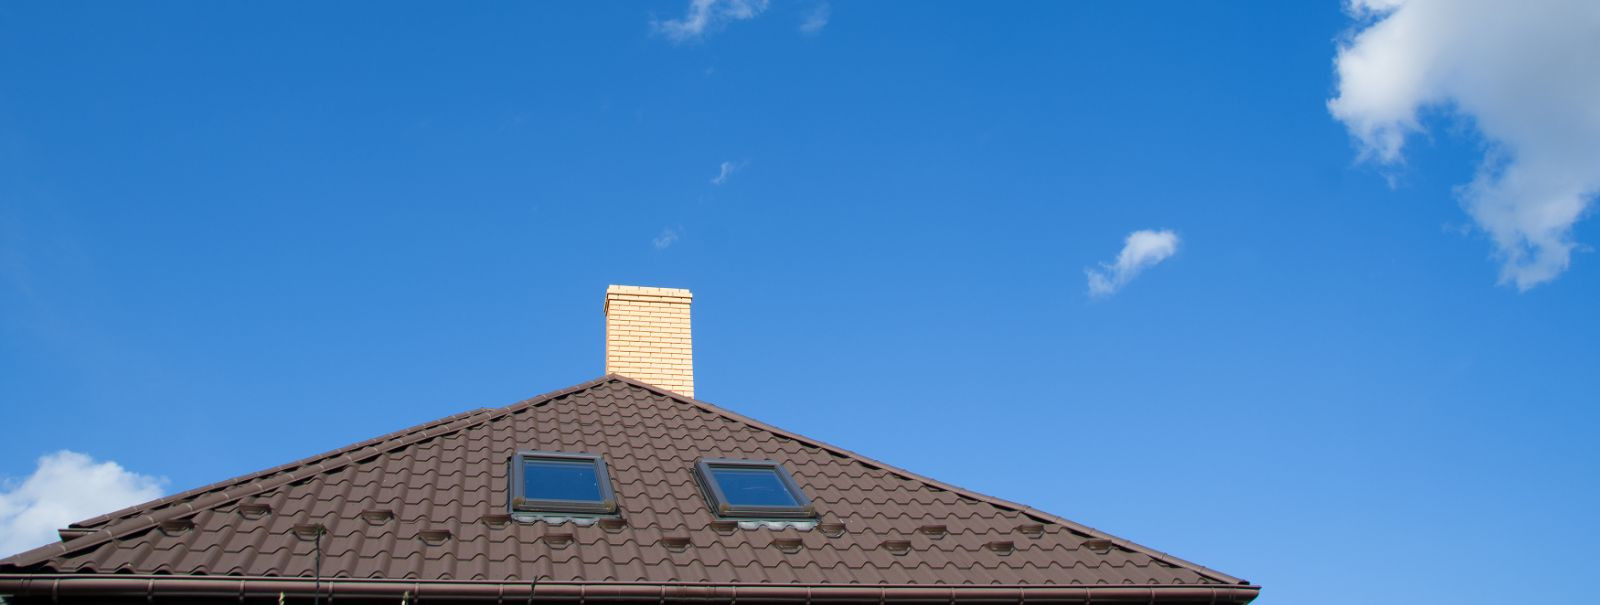 Harjumaa, Tallinna kodu- ja ärikinnisvara omanikele on katus teie hoone struktuuri kriitiline komponent. See kaitseb teid elementide eest ja aitab kaasa teie va